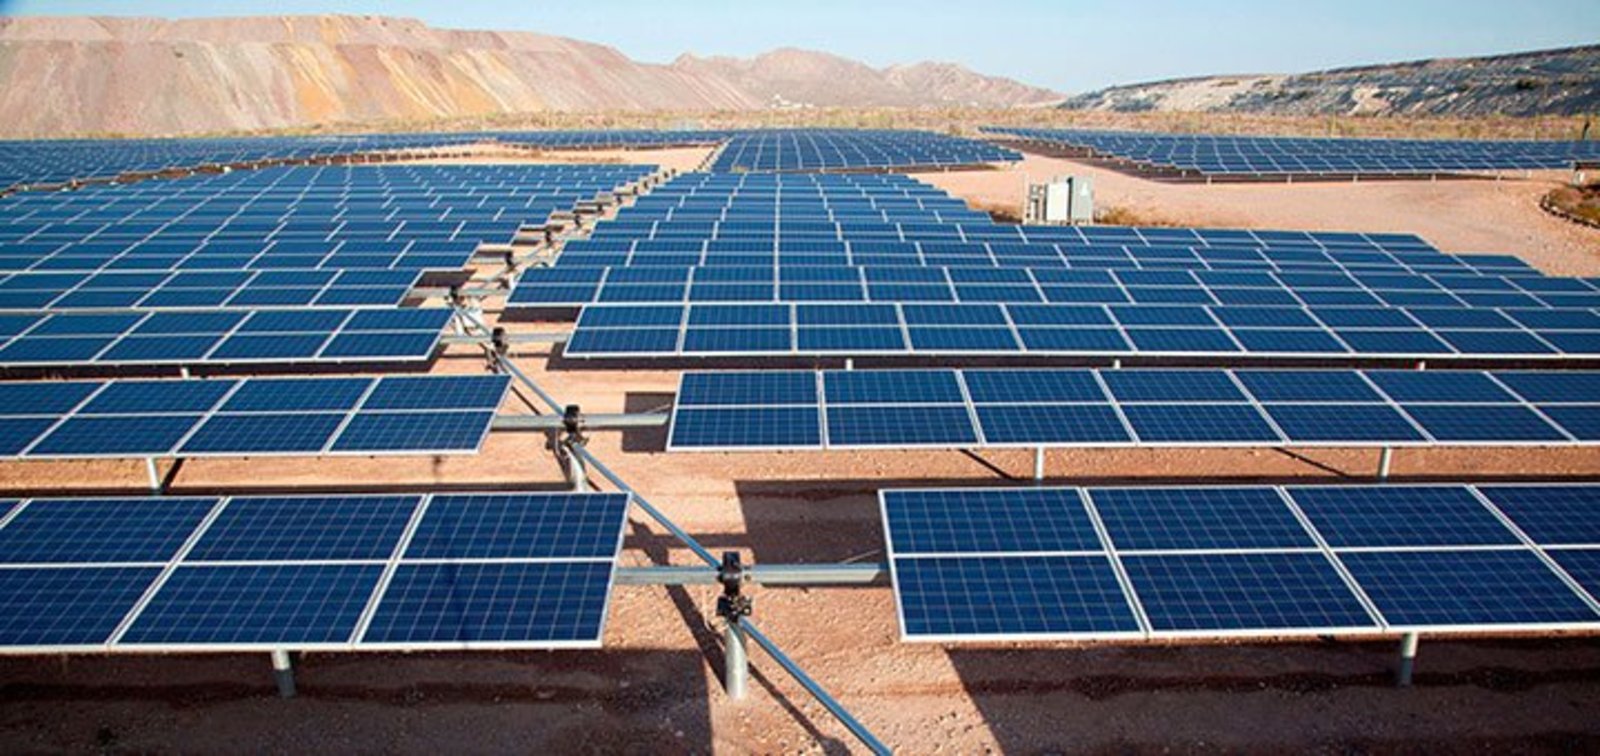 México puede duplicar energía solar